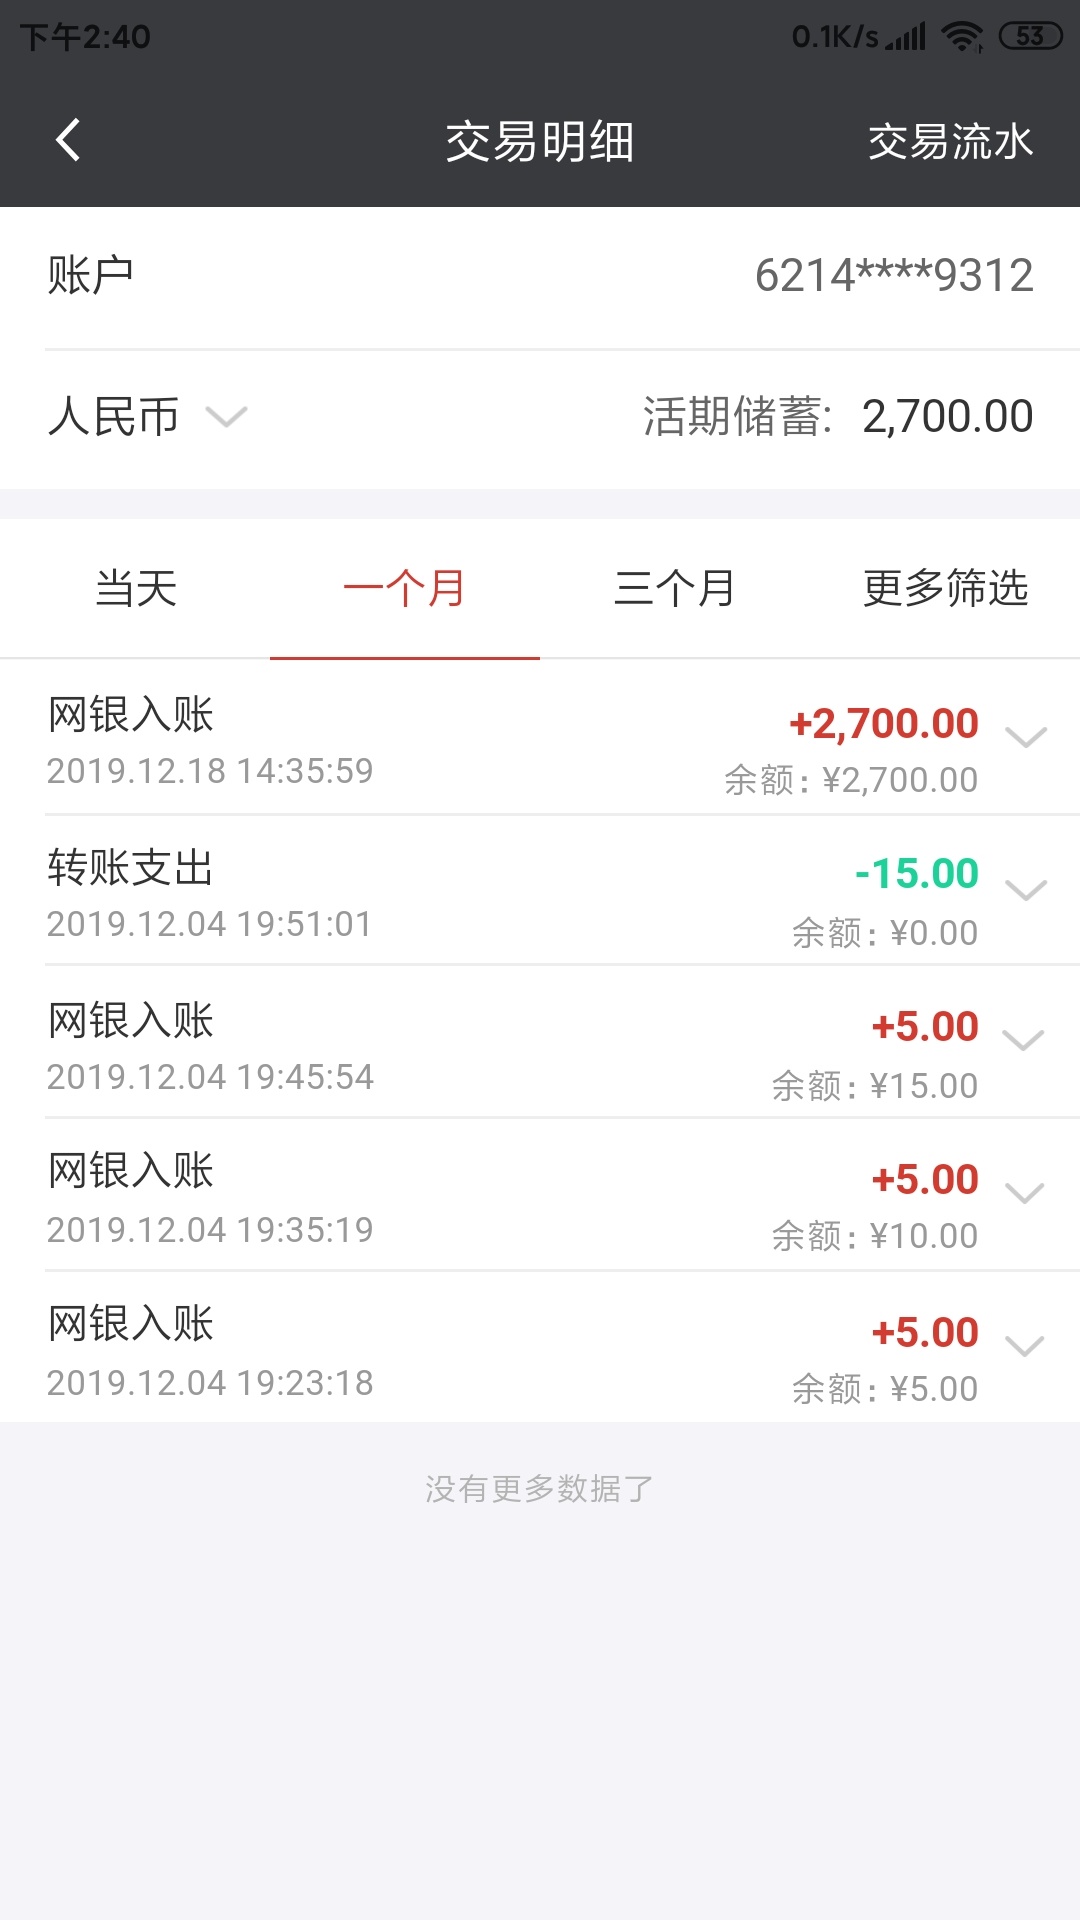 管理加精，上海快线贷下款。今天短信邀请，我以为是骗...48 / 作者:不想再来一次 / 